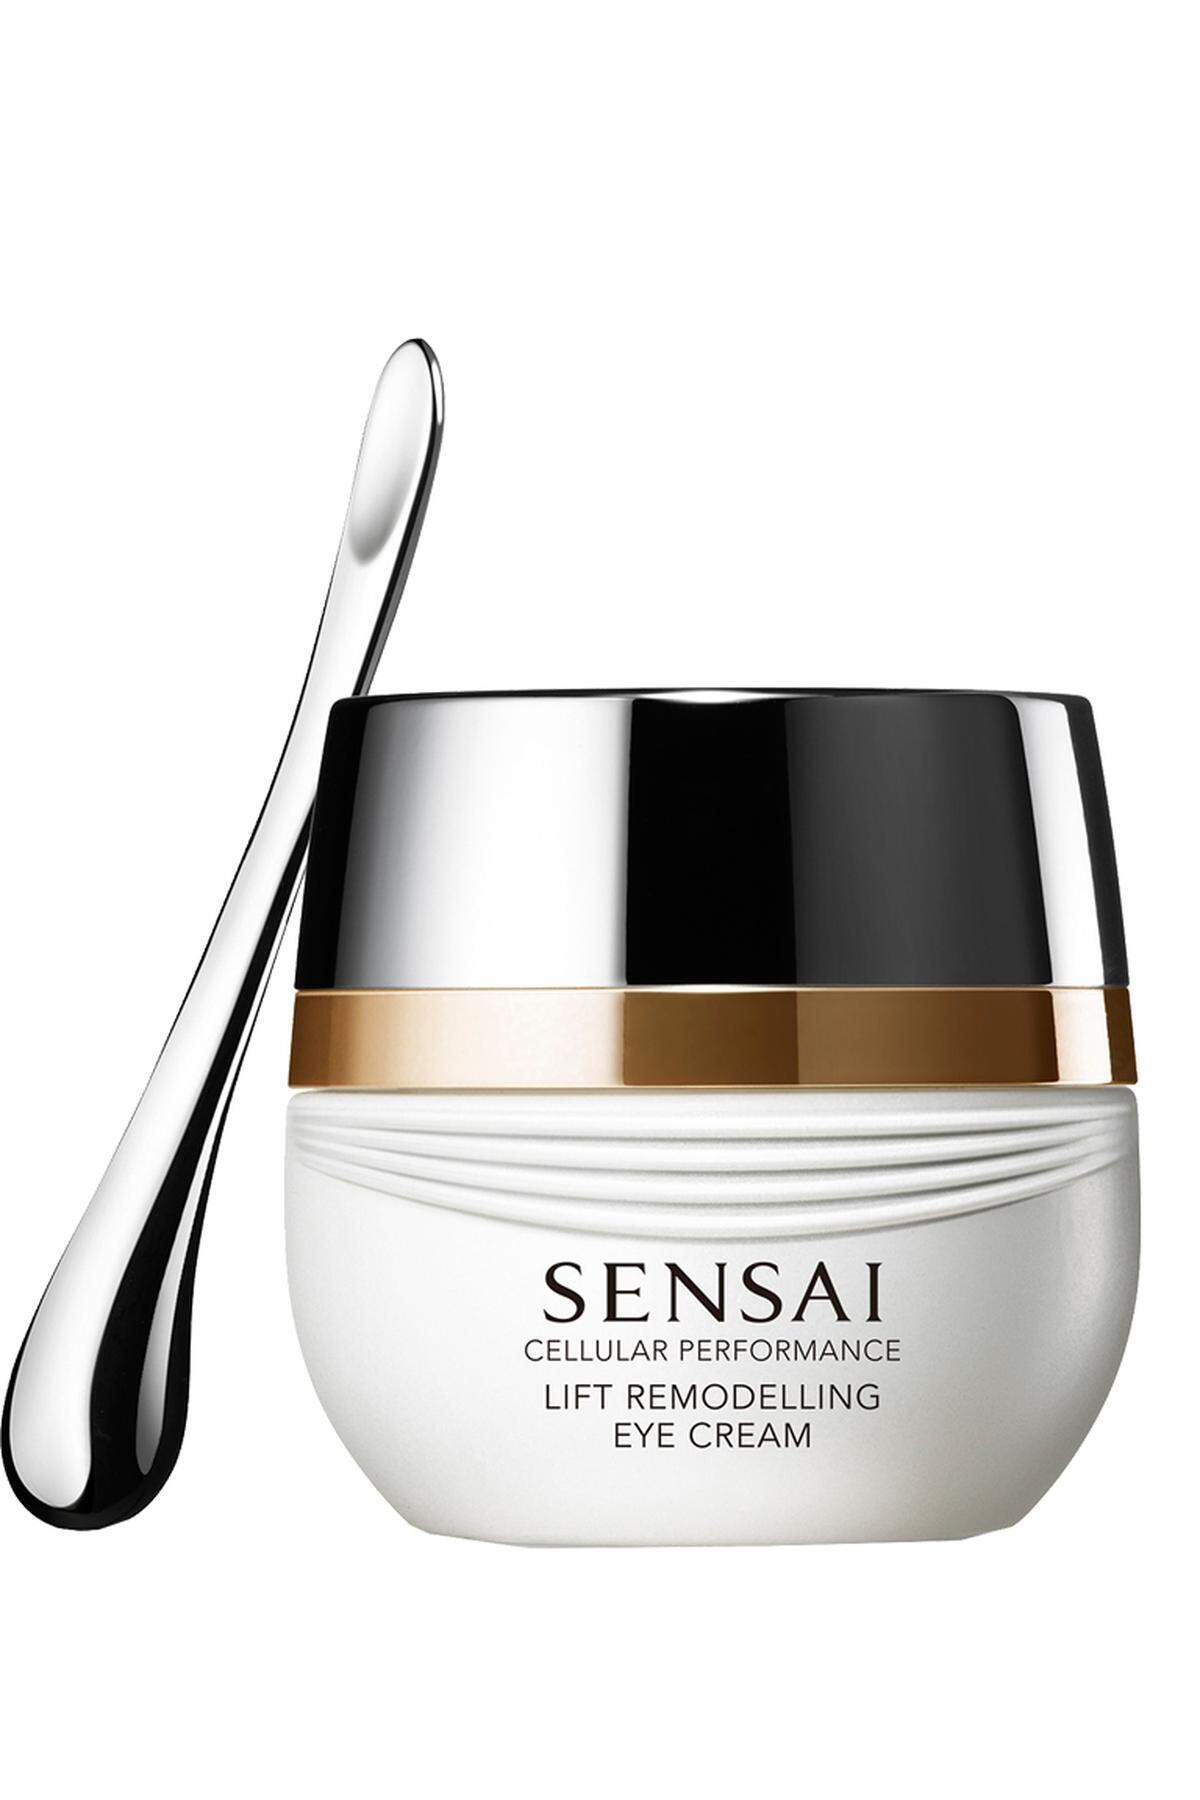 „Lift Remodelling Eye Cream“ von Sensai, 15 ml, 155 Euro, im ausgewählten Fachhandel erhältlich